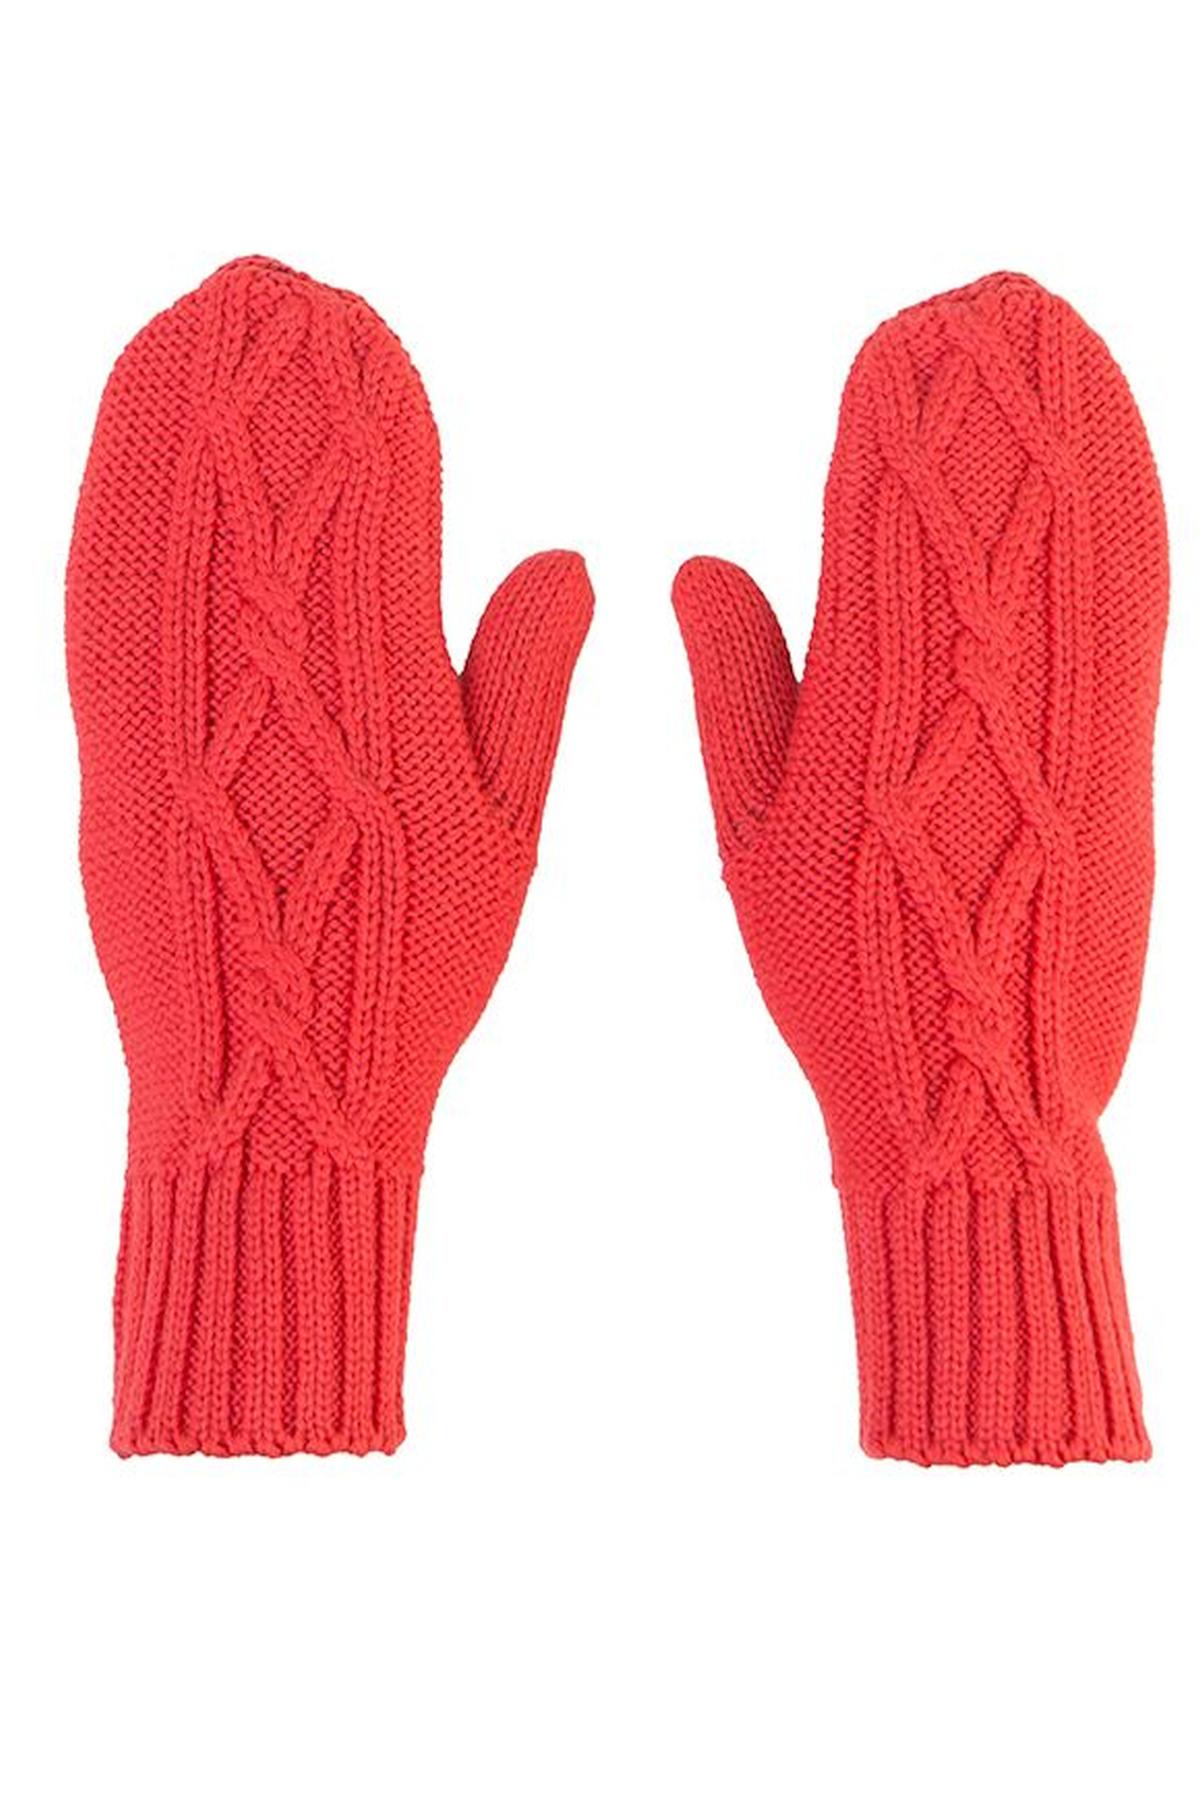 Kosha Red Merino Wool Mittens